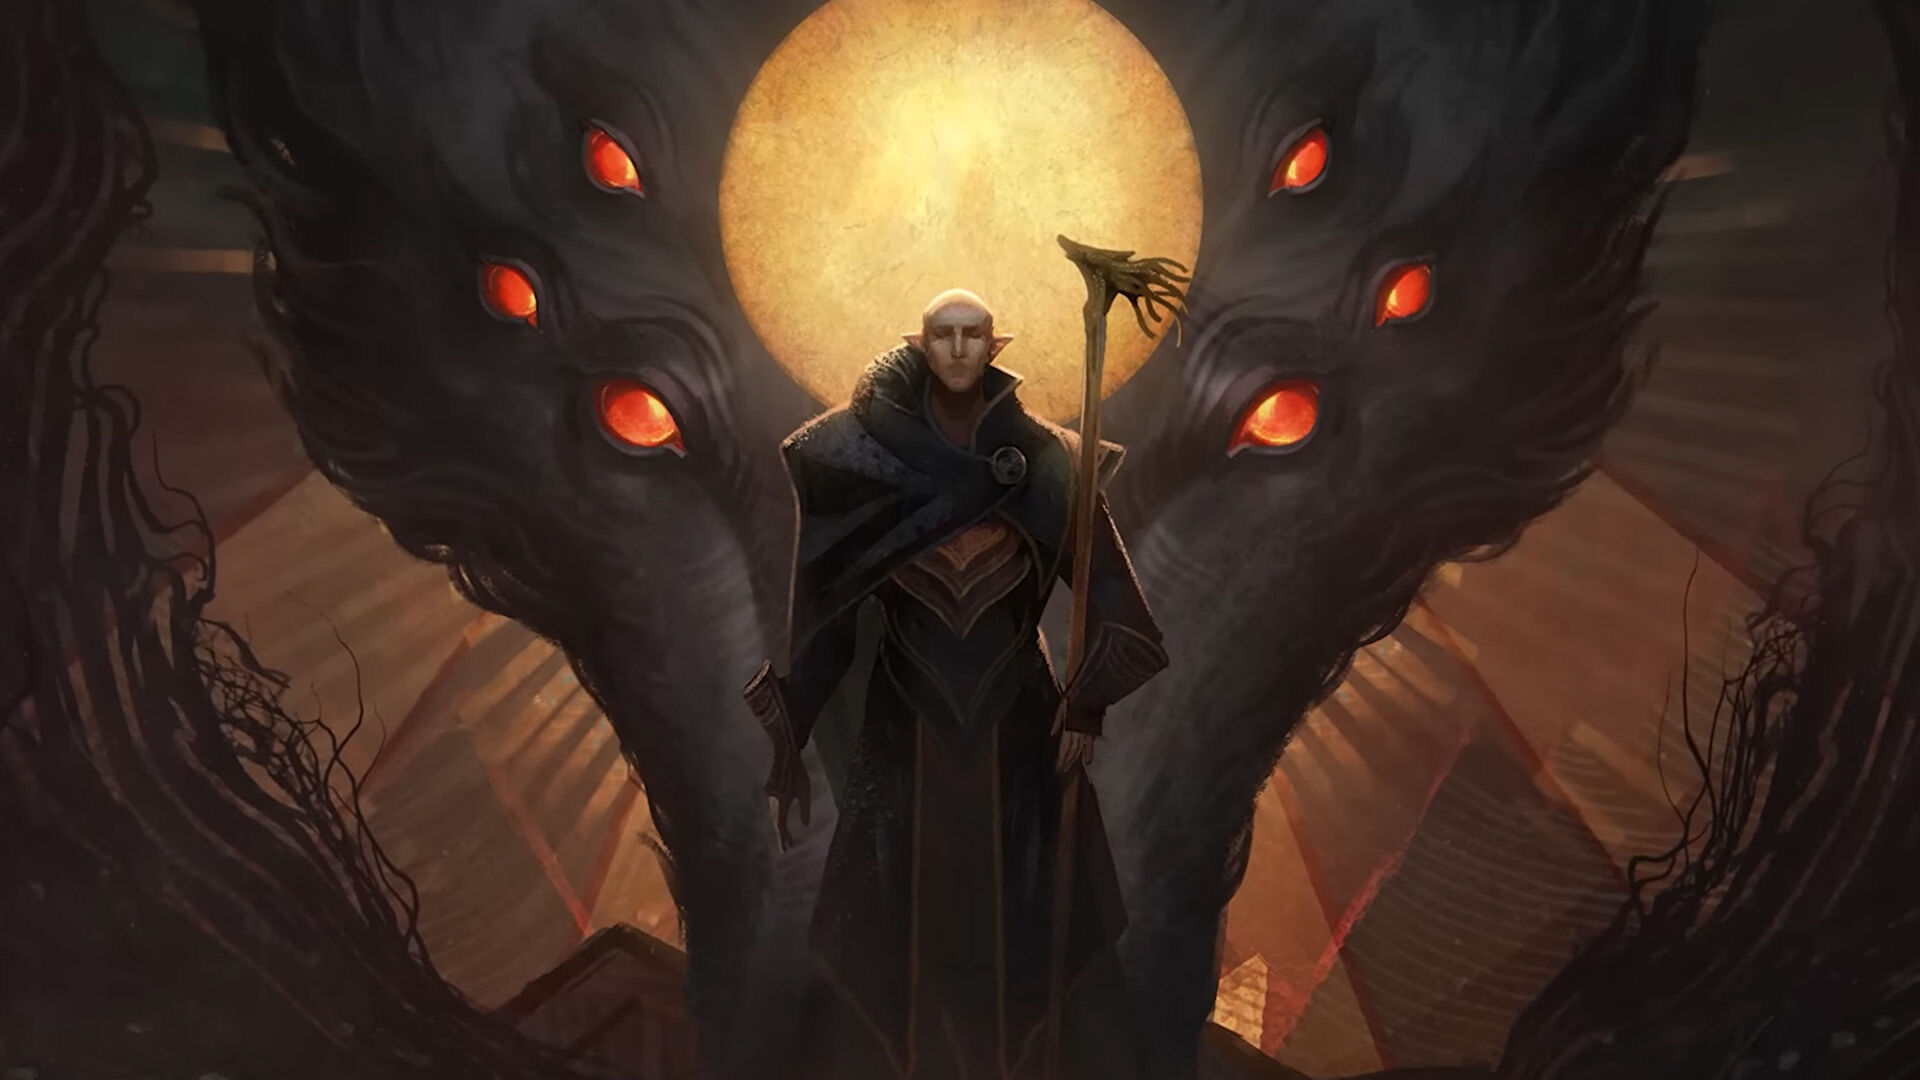 В сети появился трейлер и постеры мультсериала Dragon Age, который получил рейттинг 18+